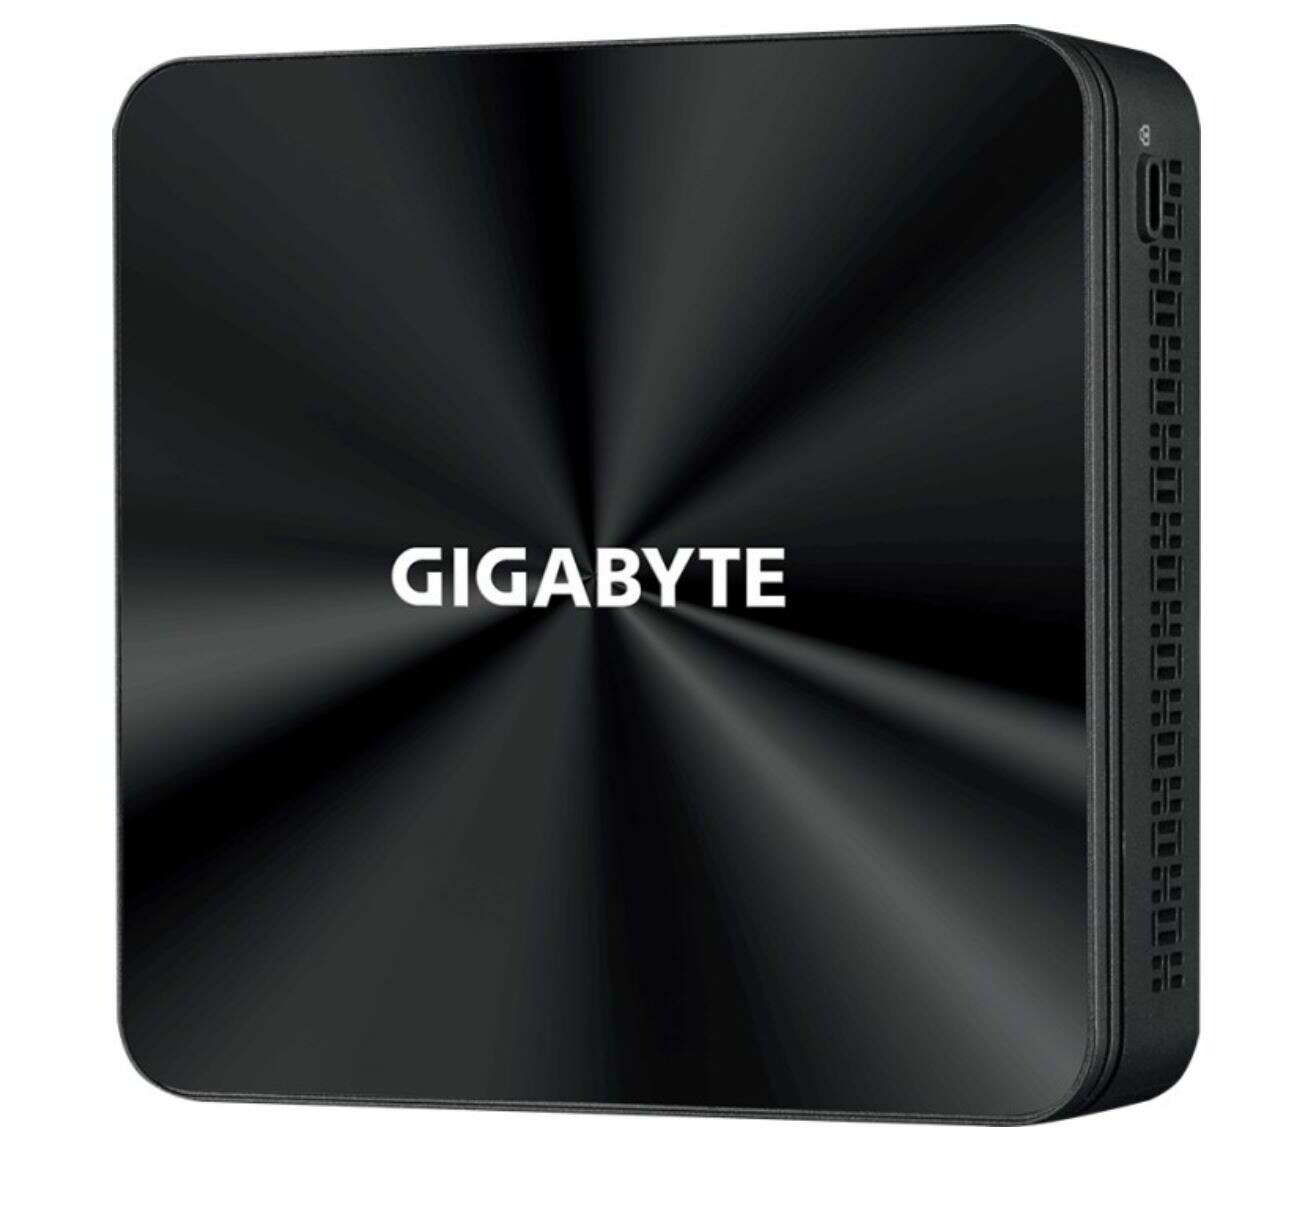 Gigabyte pc brix, intel core i5 10210u 4.2ghz, 2xhdmi, lan, wifi,...